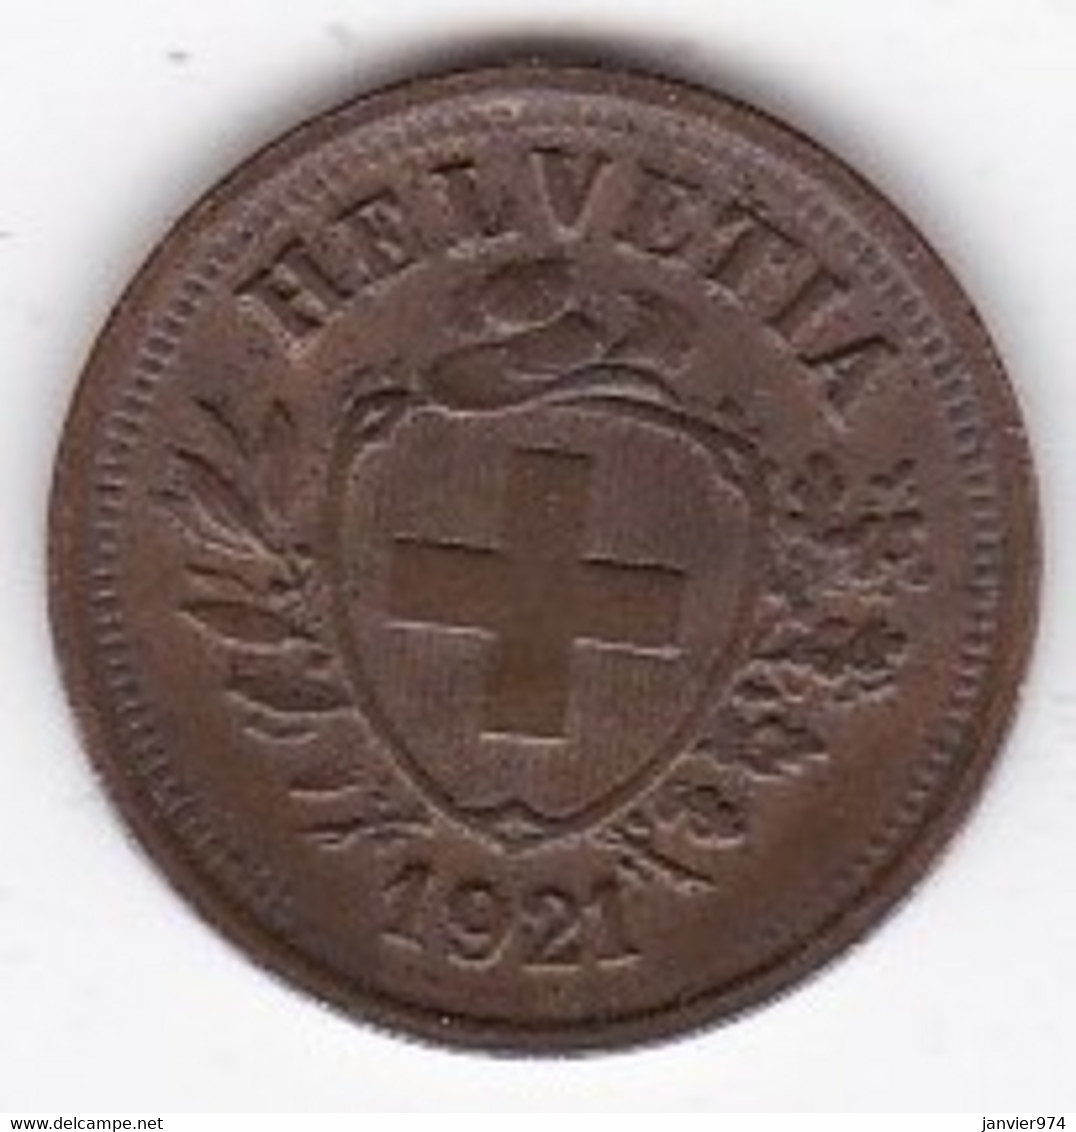 Suisse 1 Rappen 1921 B, En Bronze, KM# 3 - 1 Centime / Rappen